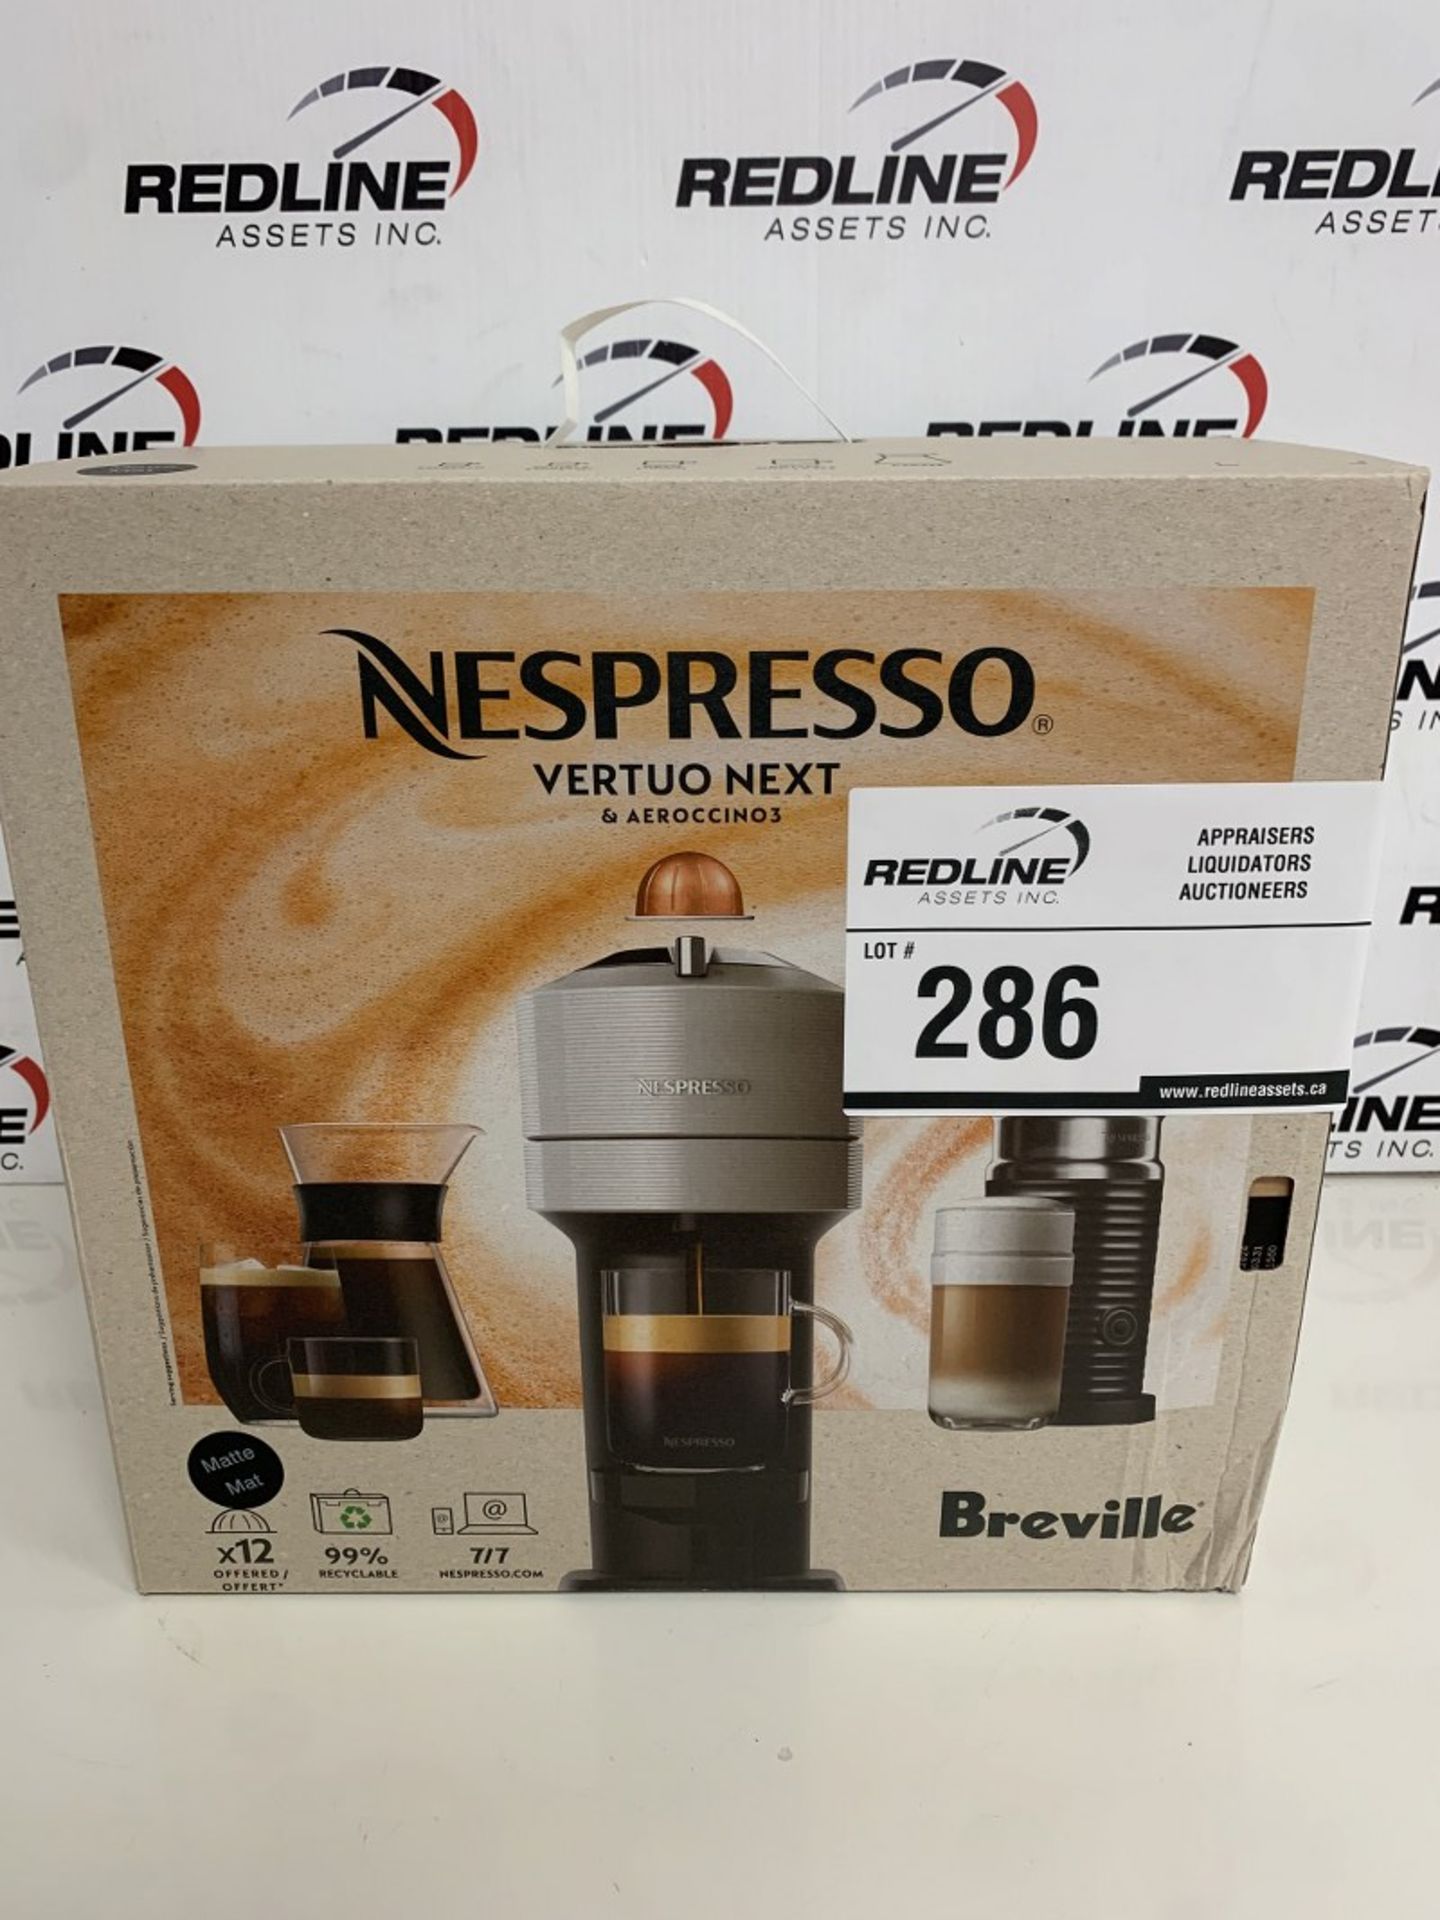 Breville - Nespresso Vertuo Next Coffee Machine